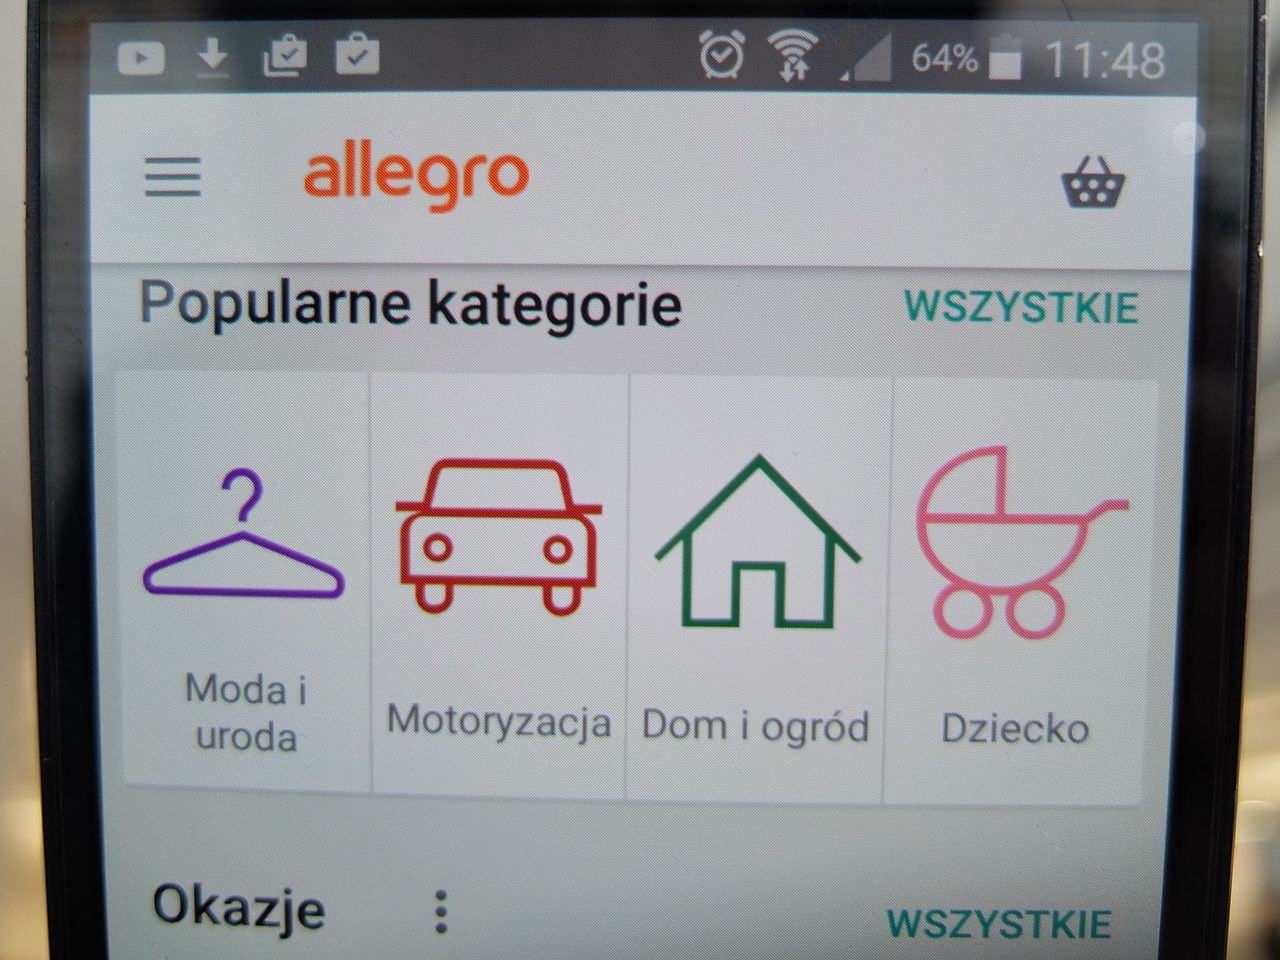 Allegro wprowadza nową metodę płatności